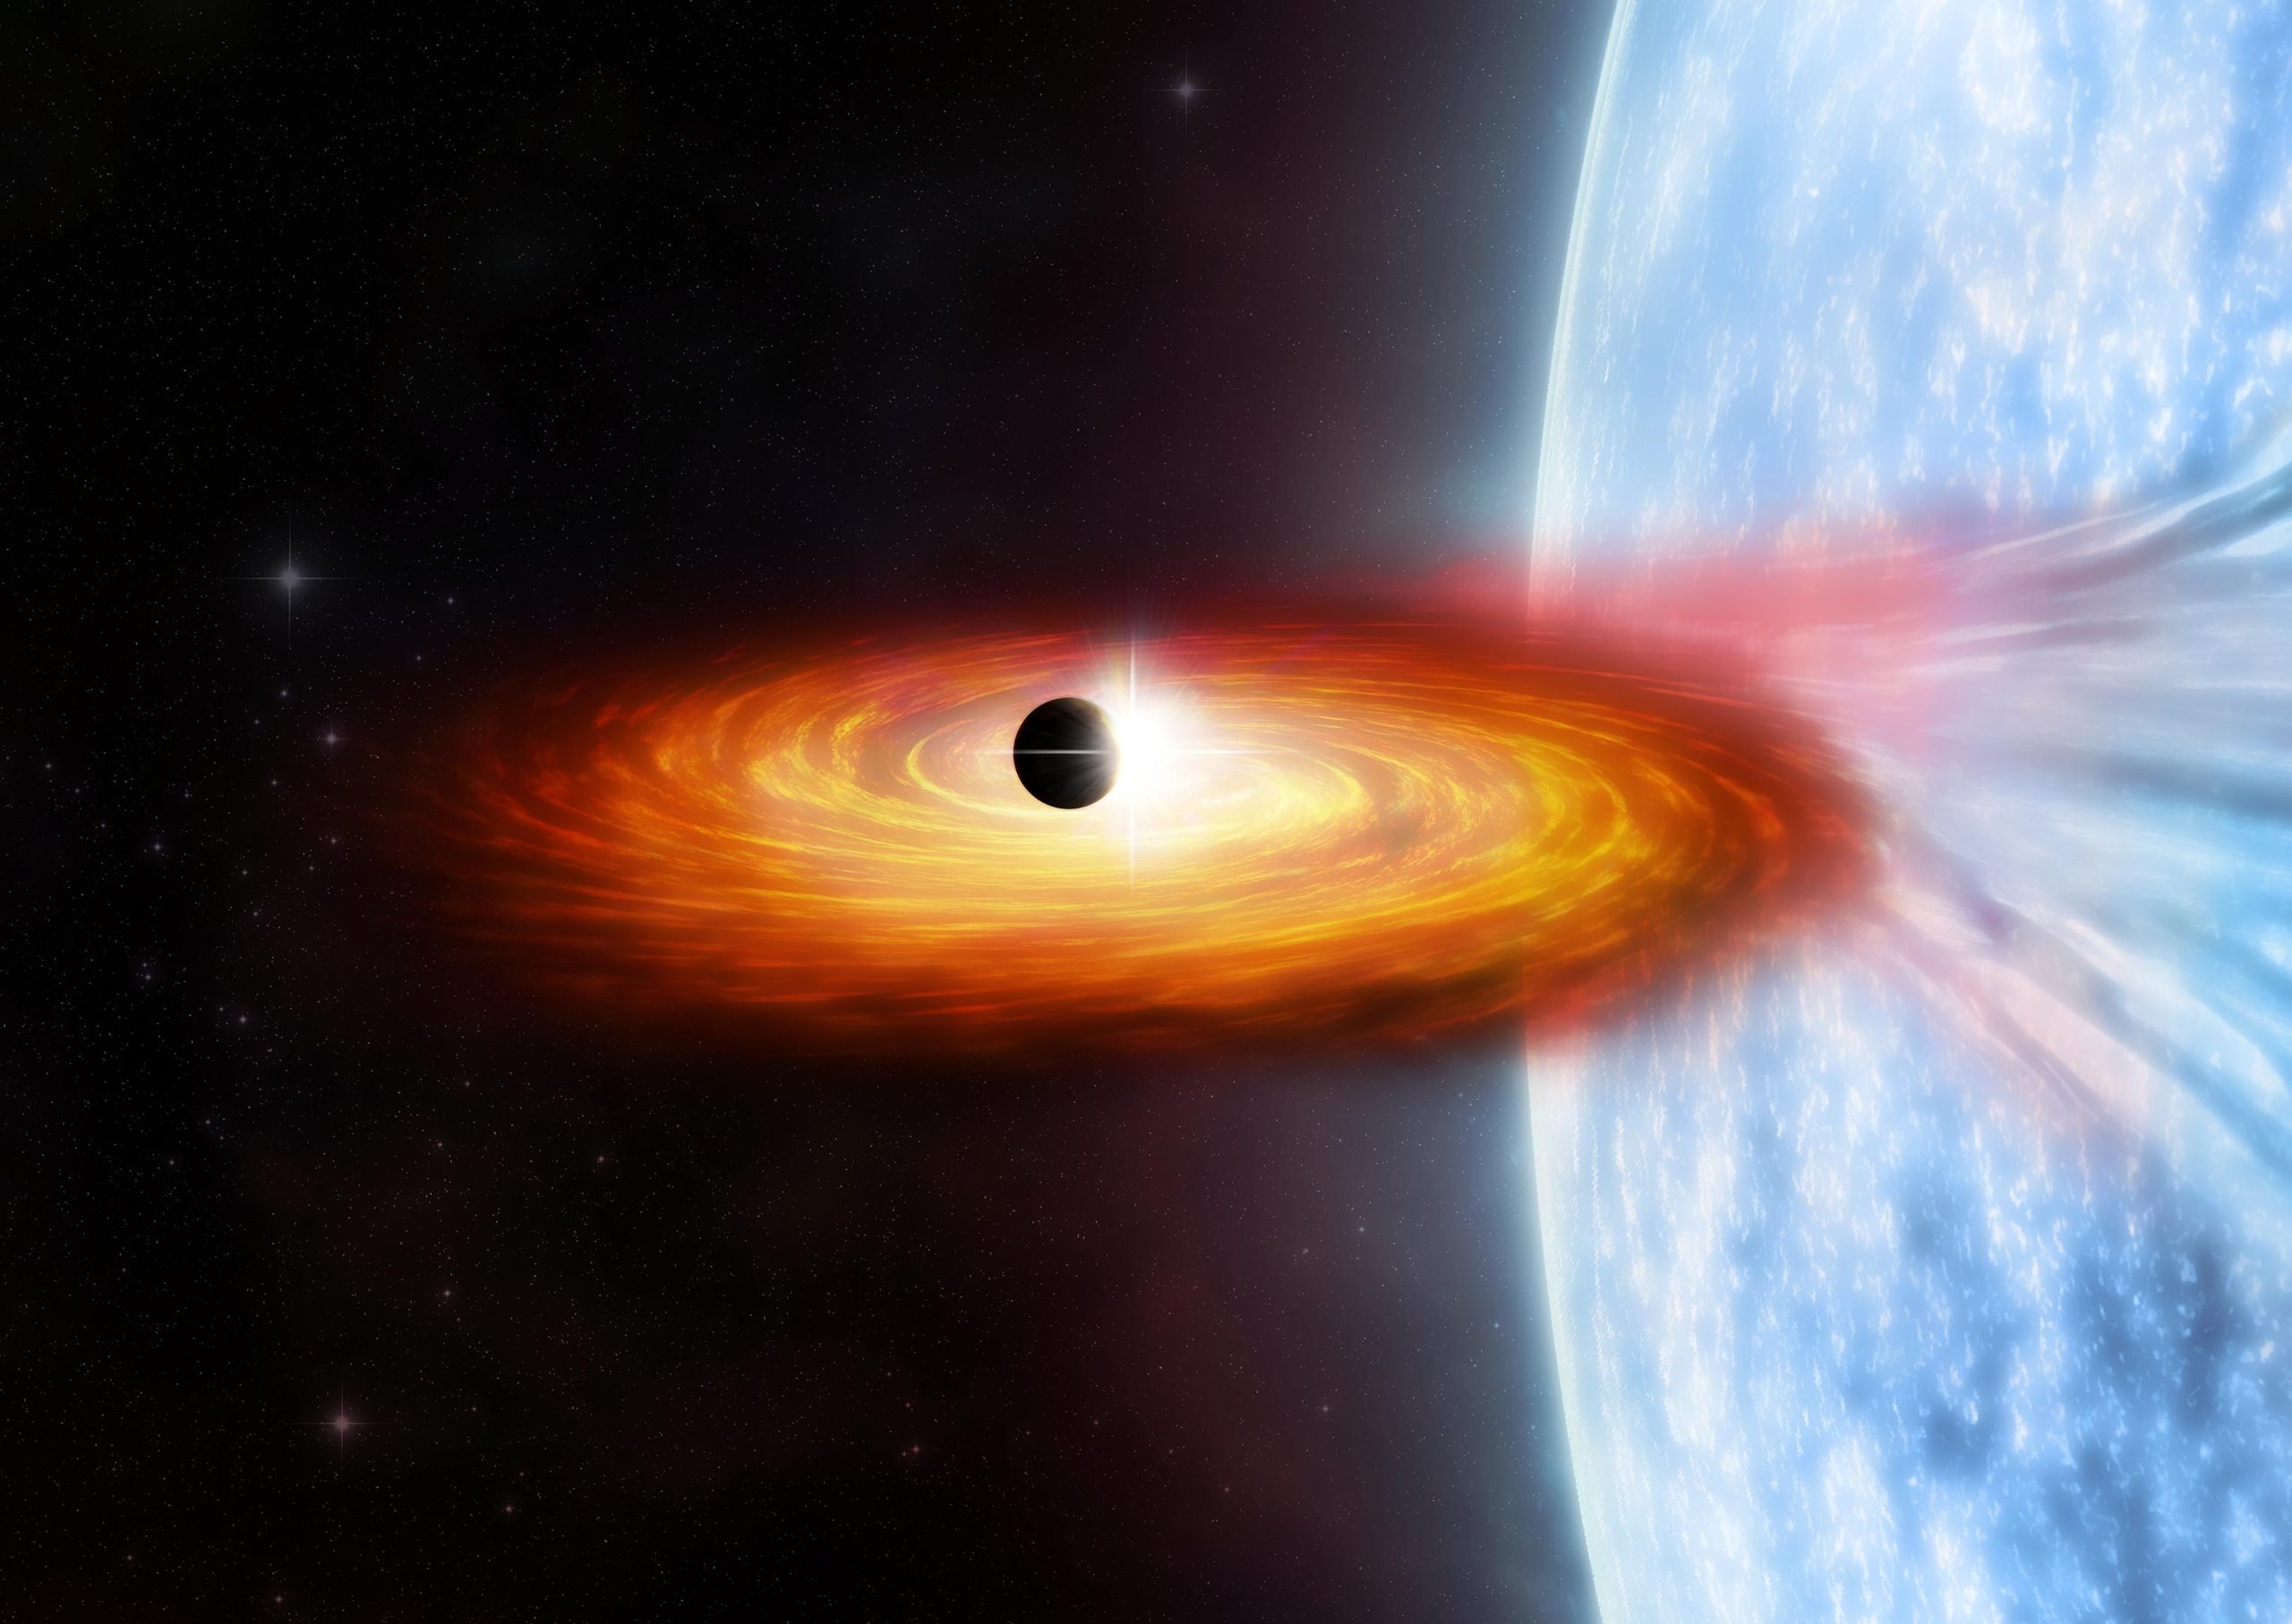 Los astrónomos han encontrado evidencia de un posible planeta candidato en la galaxia M51 ("Remolino"), que representa lo que podría ser el primer planeta detectado fuera de la Vía Láctea. Chandra detectó la atenuación temporal de los rayos X de un sistema donde una estrella masiva está en órbita alrededor de una estrella de neutrones o un agujero negro (que se muestra en la ilustración del artista). Esta atenuación se interpreta como un planeta que pasó frente a una fuente de rayos X alrededor de la estrella de neutrones o el agujero negro. Crédito: NASA / CXC / M. Weiss